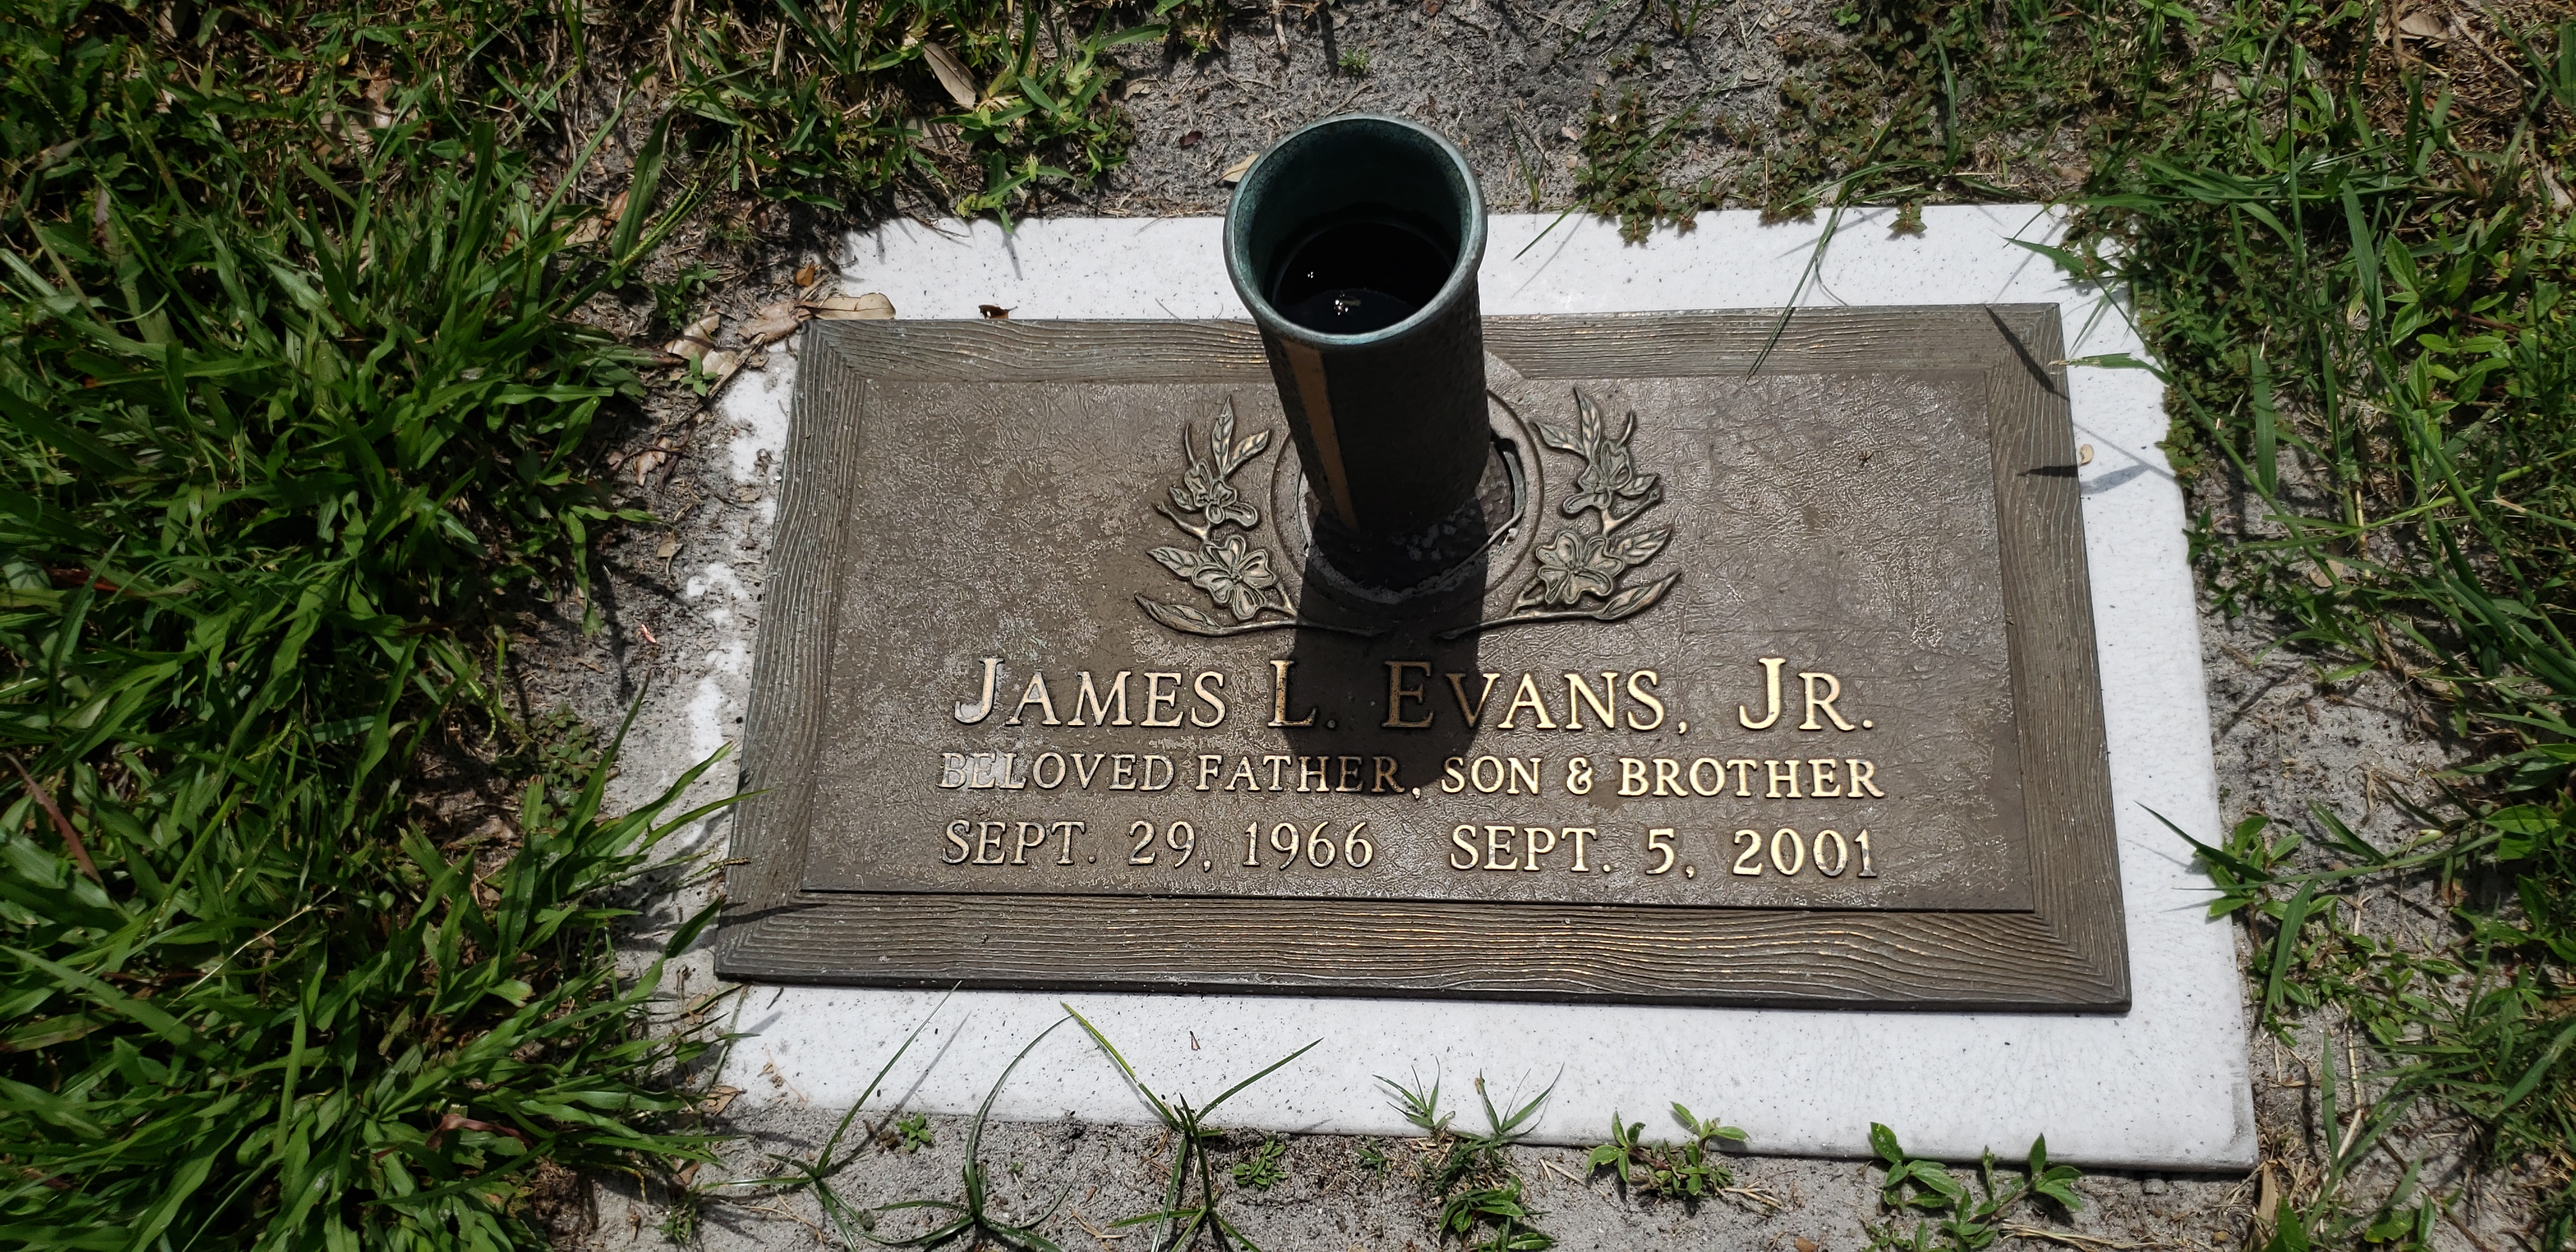 James L Evans, Jr